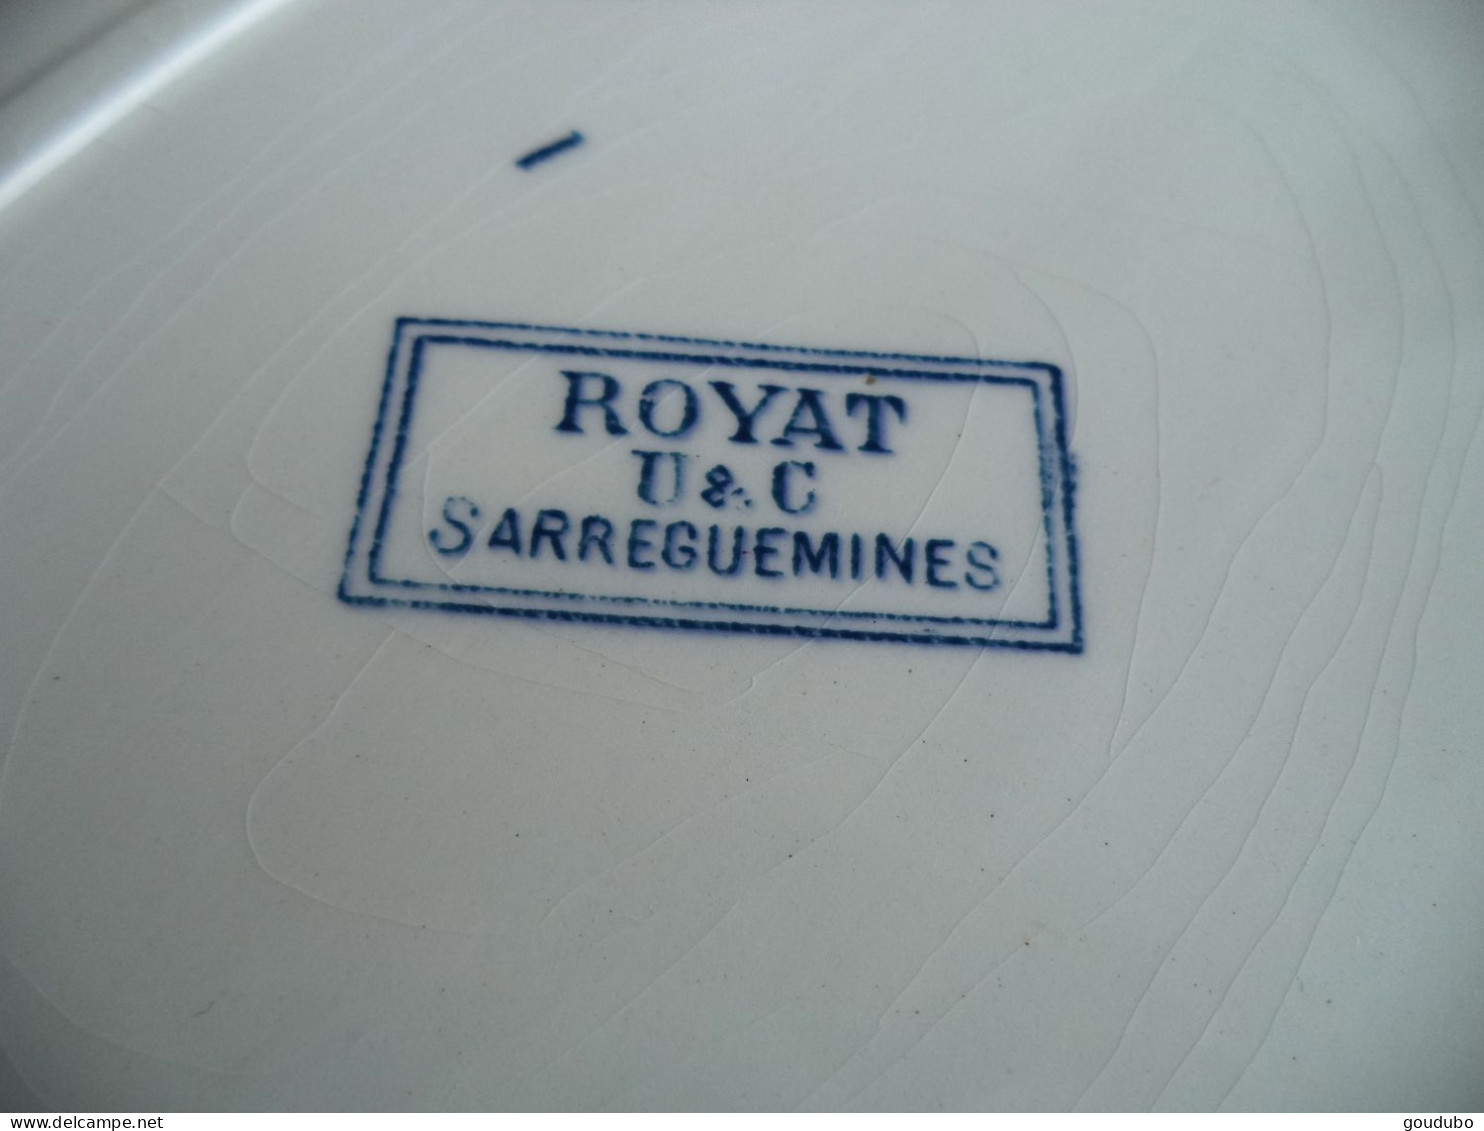 Sarreguemines U&C Service Royat Lot de trois pièces deux plats un ravier Décor fleurs bleues terre de fer